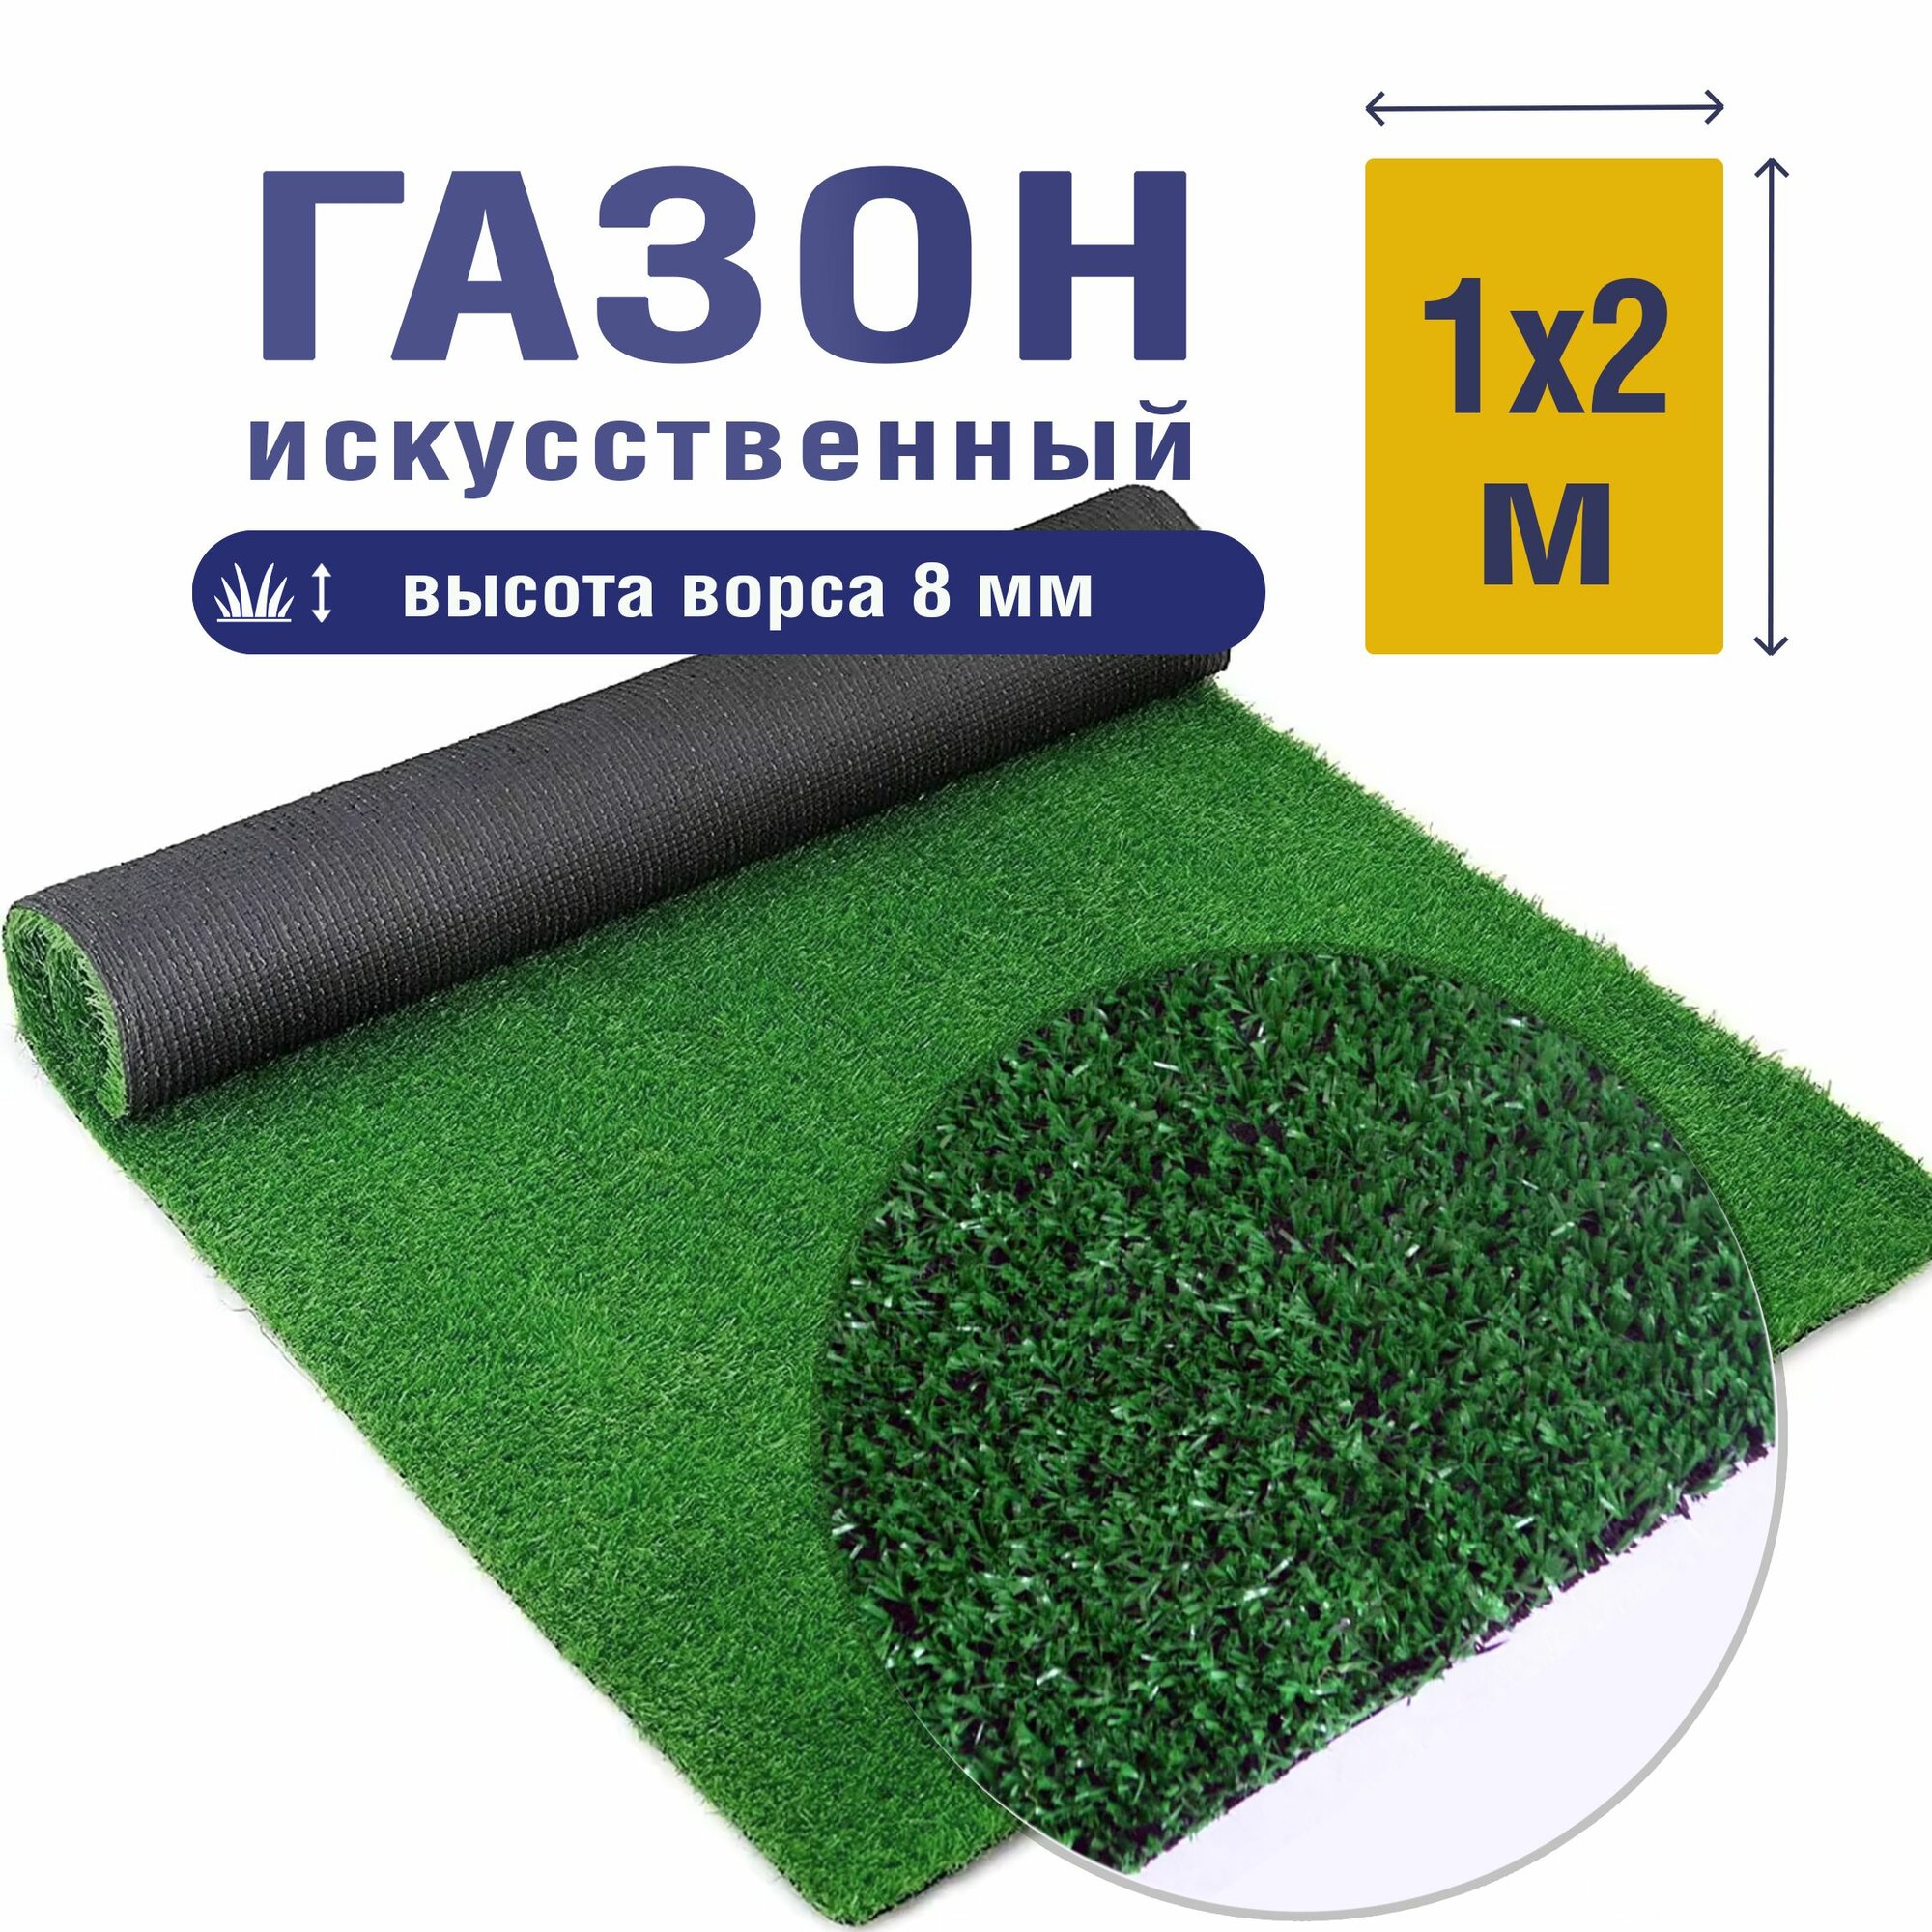 Трава искусственная зелененая 8 мм 1м*1м / искусственный газон